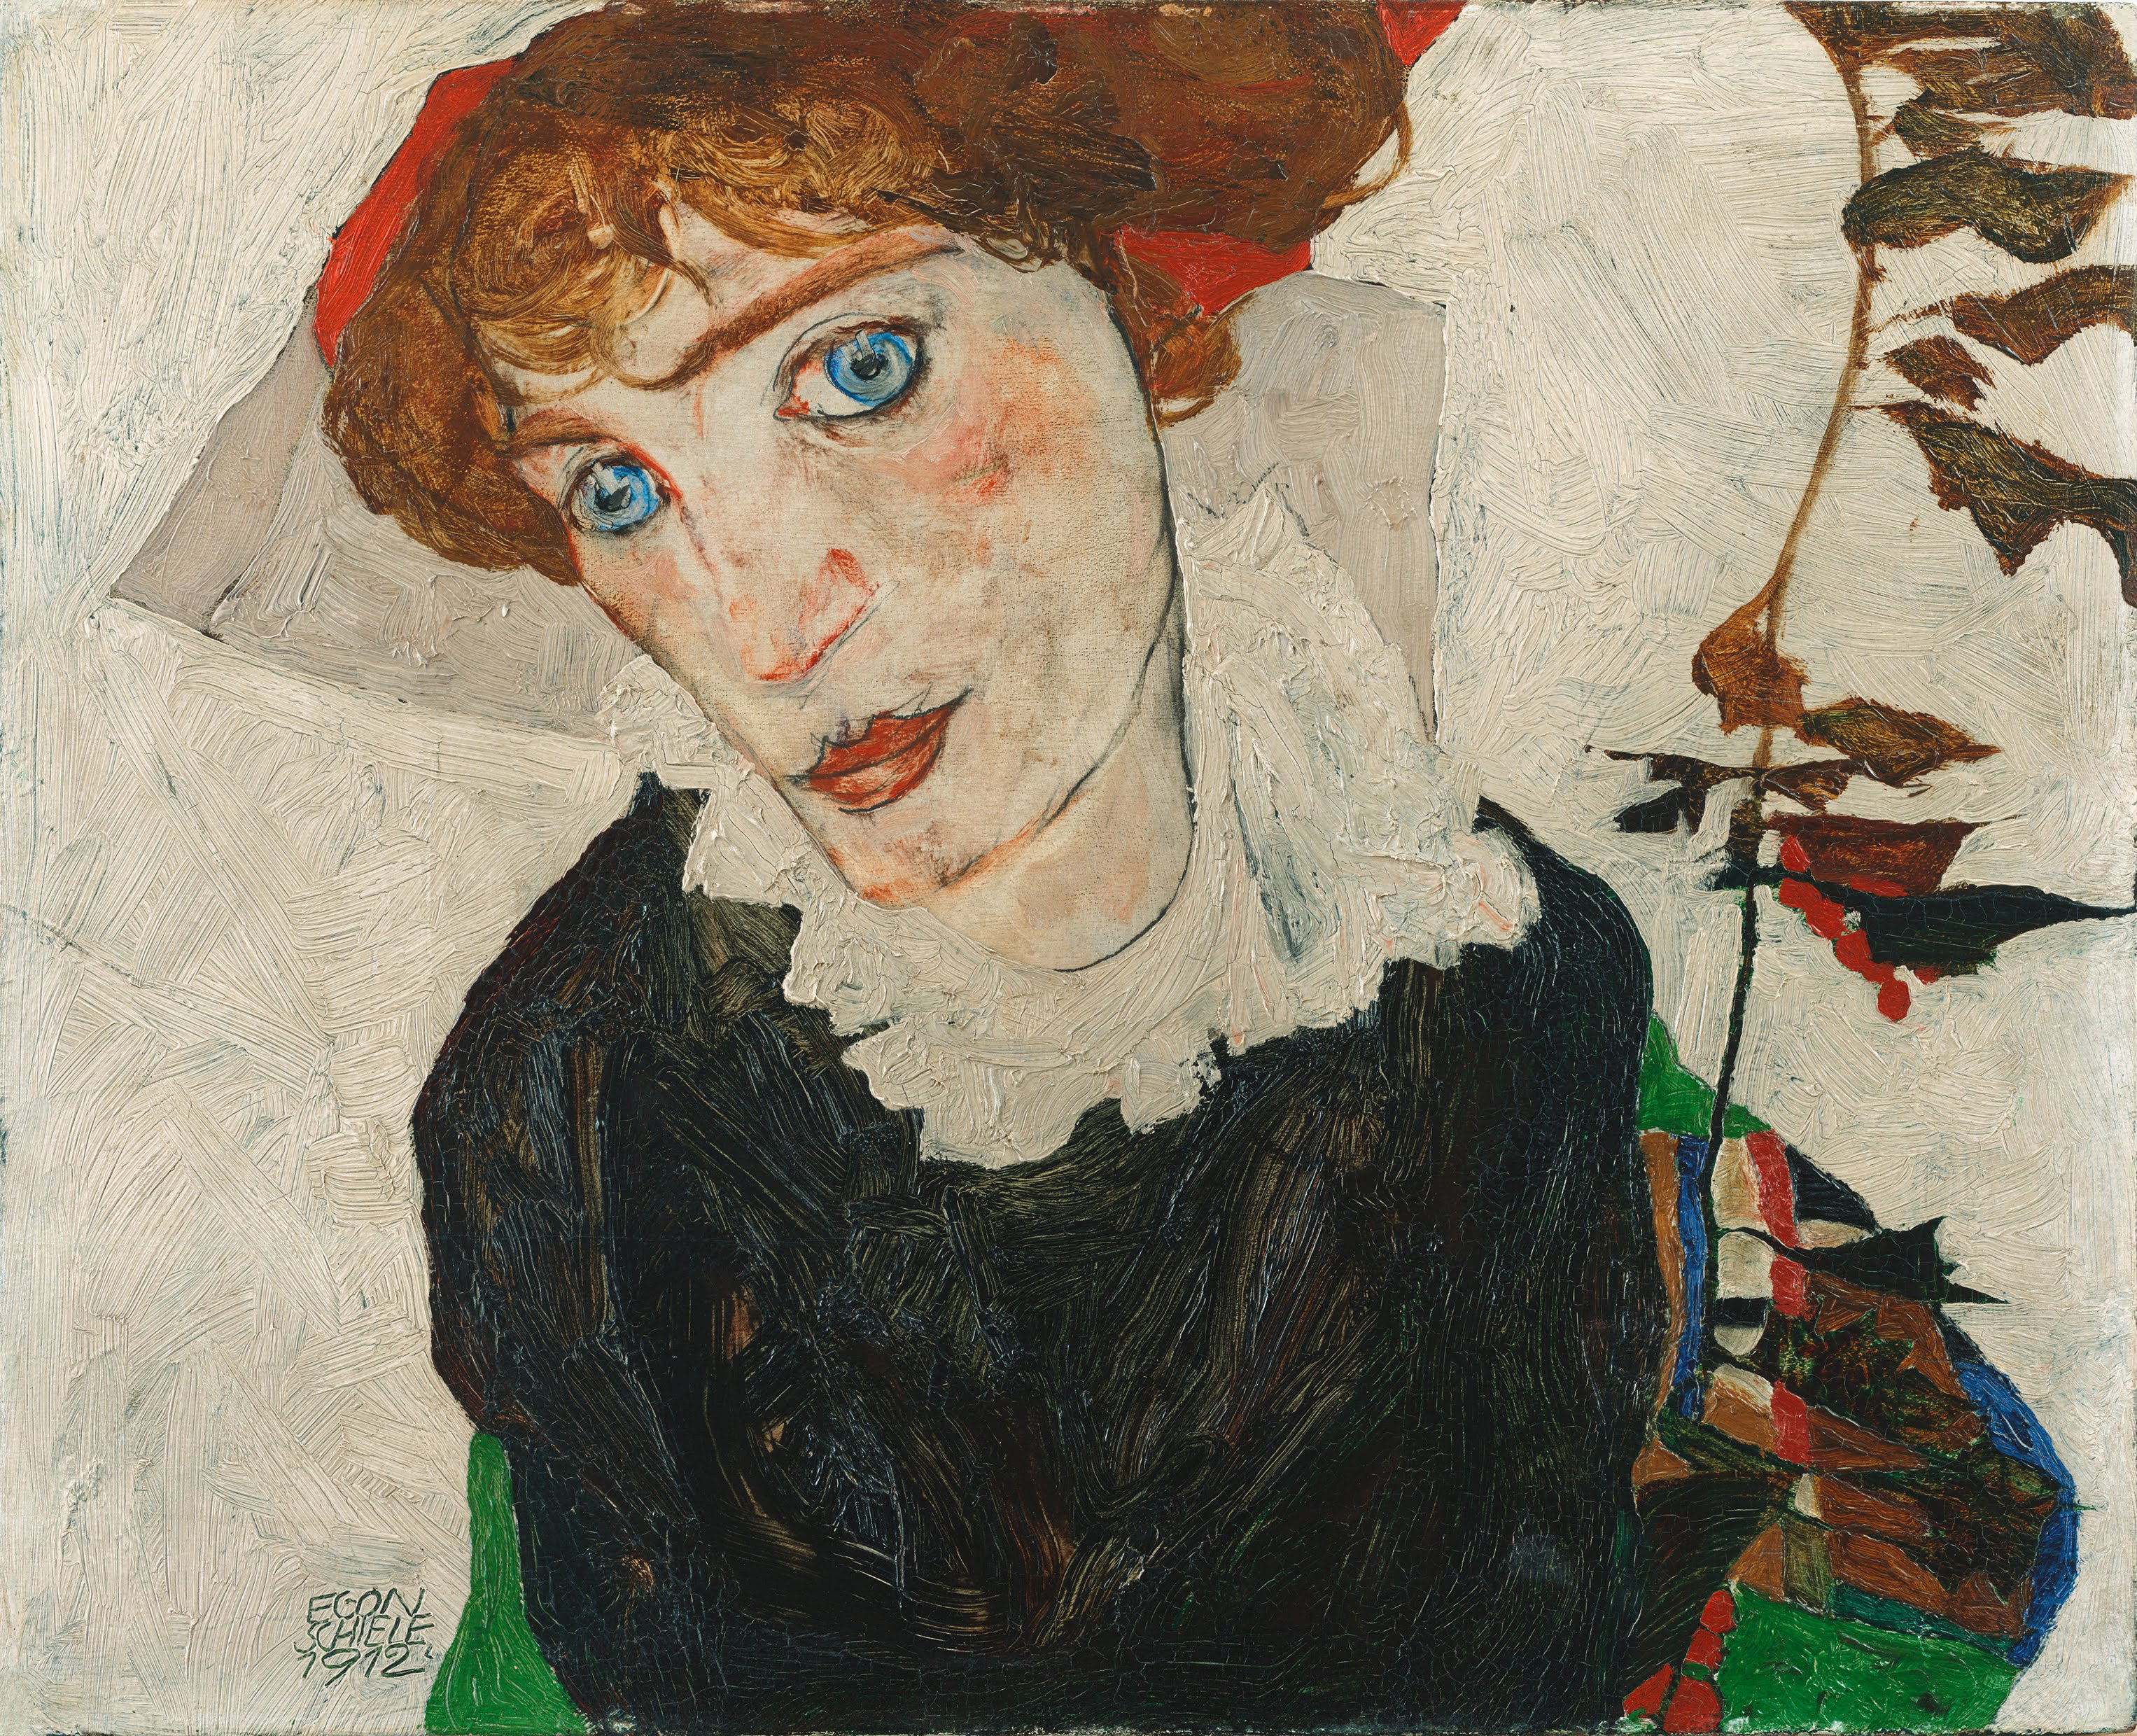 발리 노이질(Wally Neuzil) by Egon Schiele - 1912 - 32 cm x 39.8 cm 